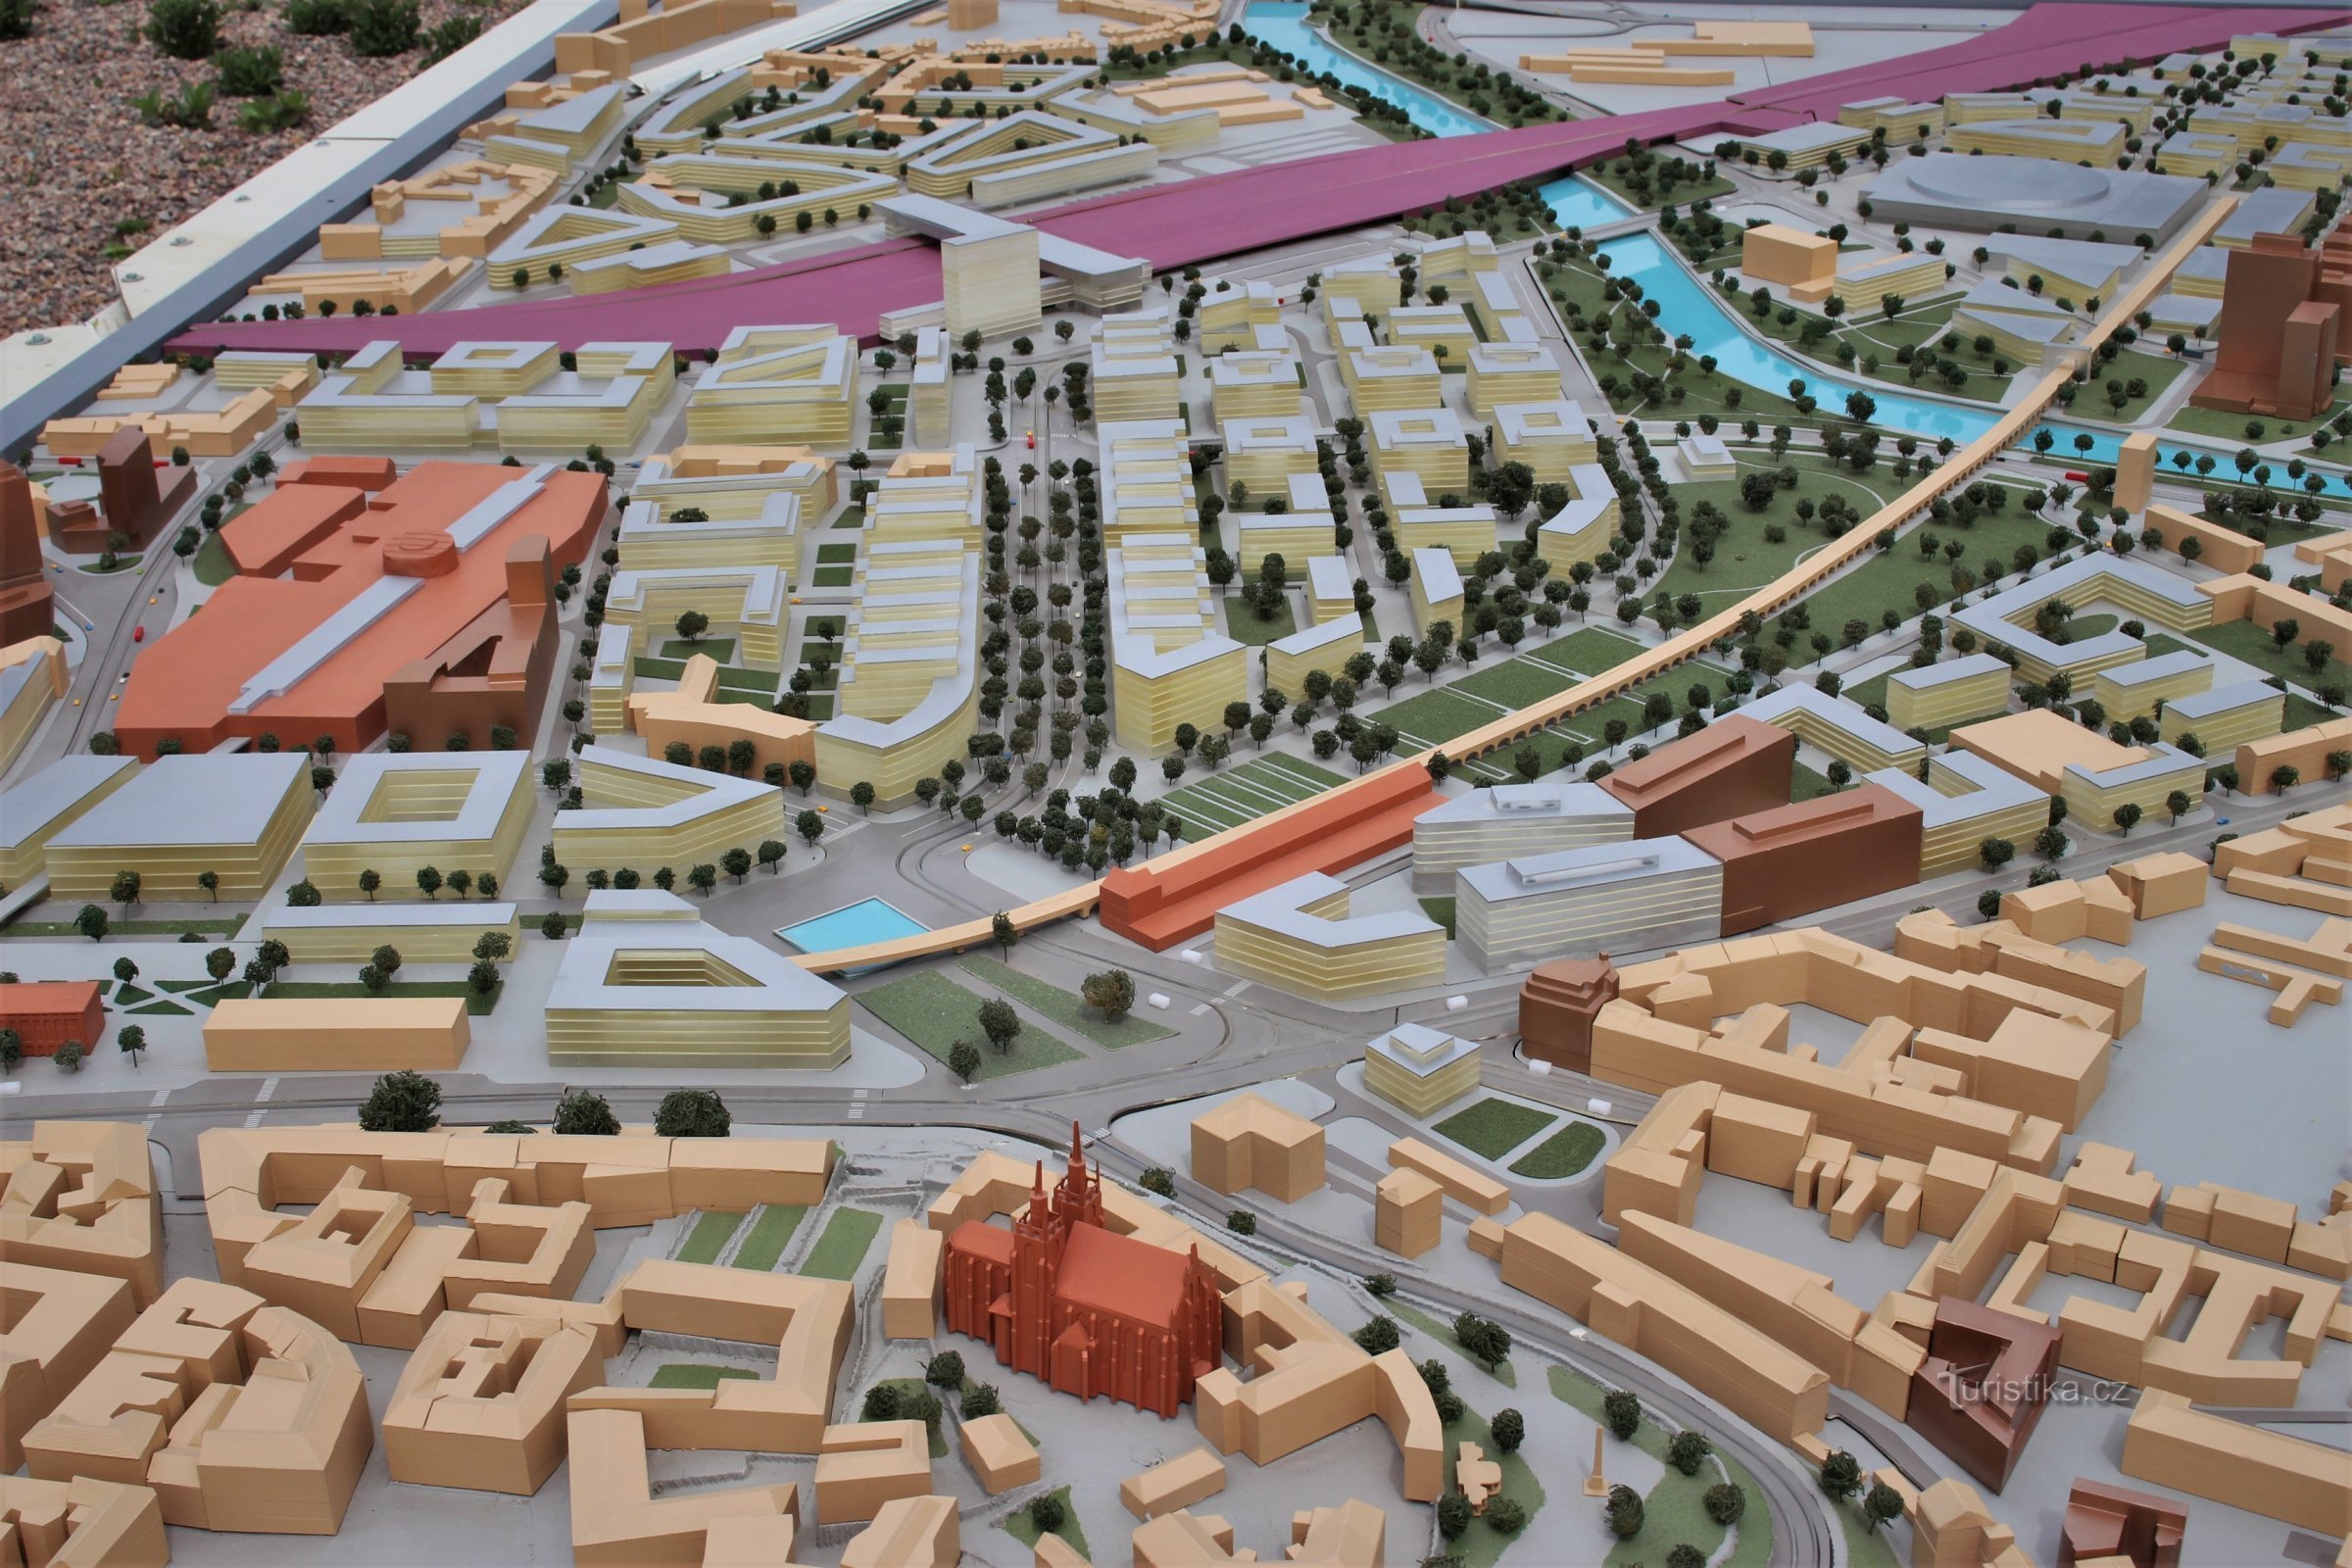 O fotografie a părții centrale a noului cartier cu o dominantă